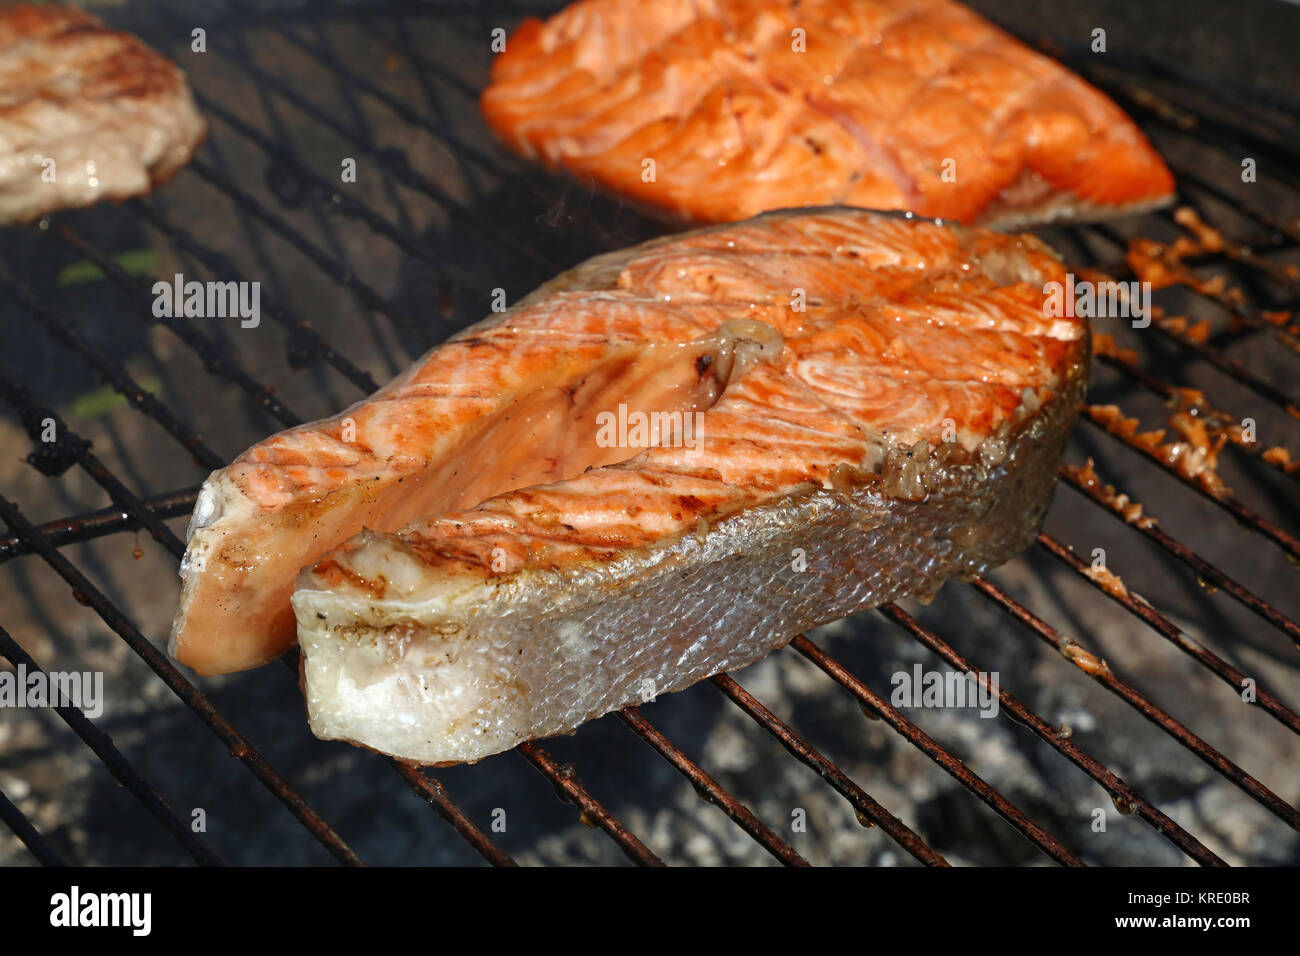 Pesce salmone steak grill barbecue per la cottura close up Foto Stock